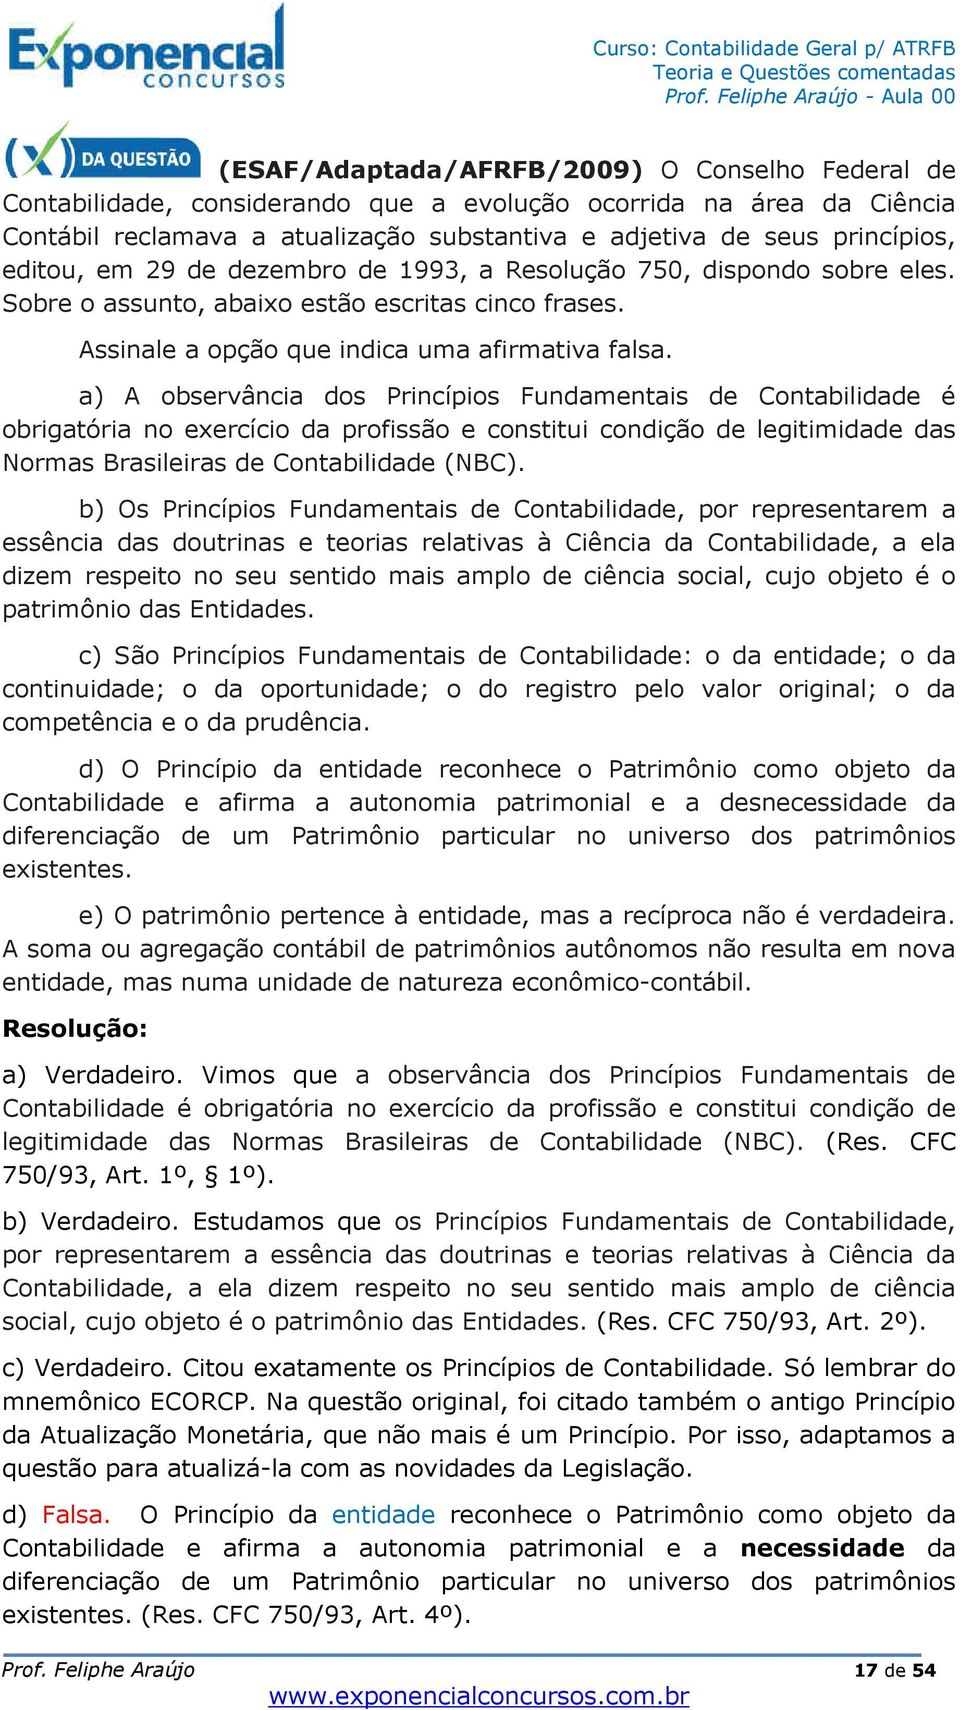 a) A observância dos Princípios Fundamentais de Contabilidade é obrigatória no exercício da profissão e constitui condição de legitimidade das Normas Brasileiras de Contabilidade (NBC).